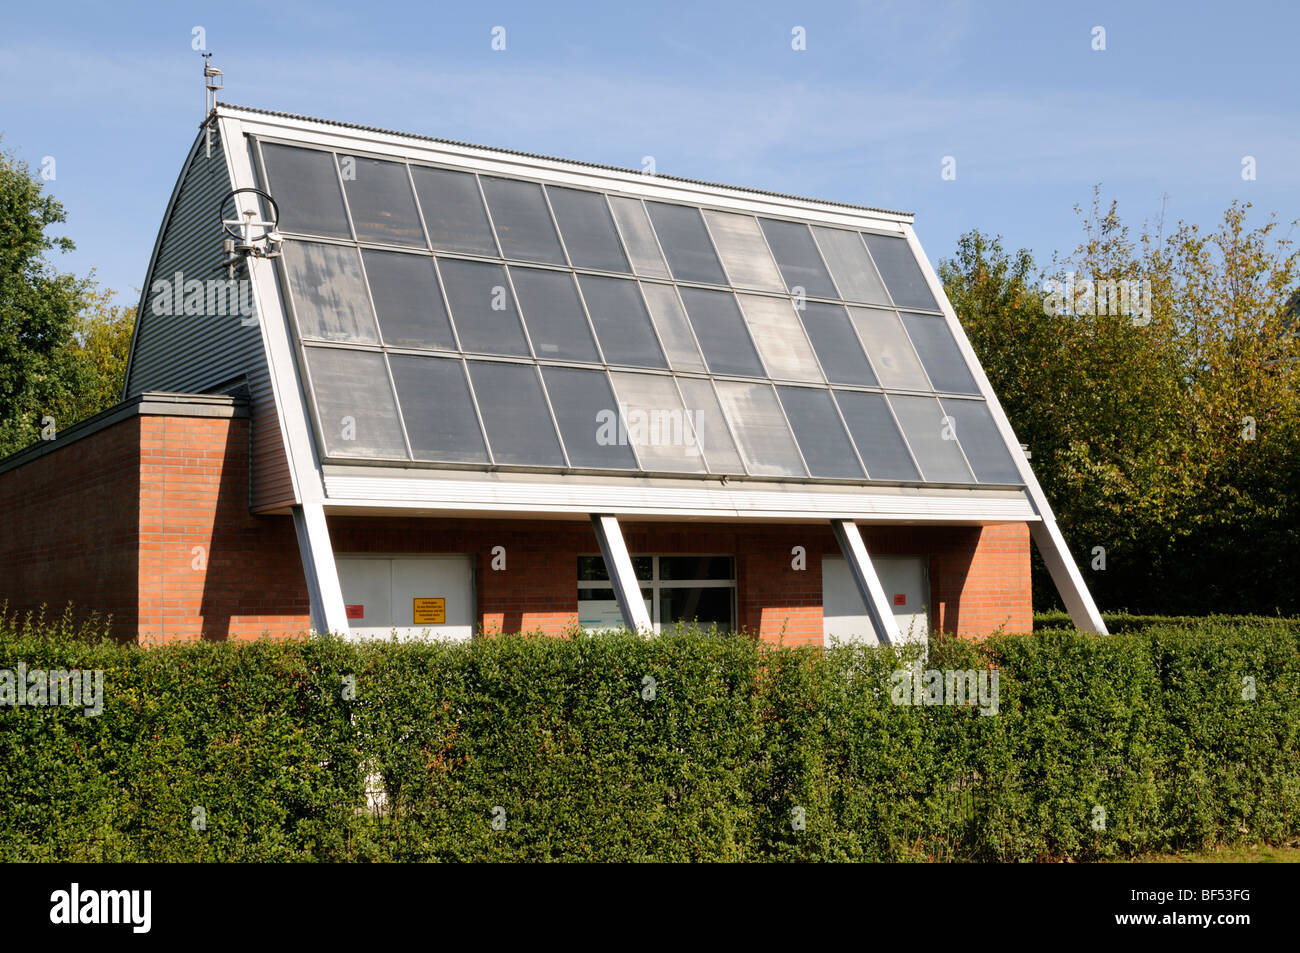 Heizzentrale Einer Solarsiedlung in Hamburg, Deutschland. -Zentralheizungen der Solarsiedlung in Hamburg, Deutschland. Stockfoto